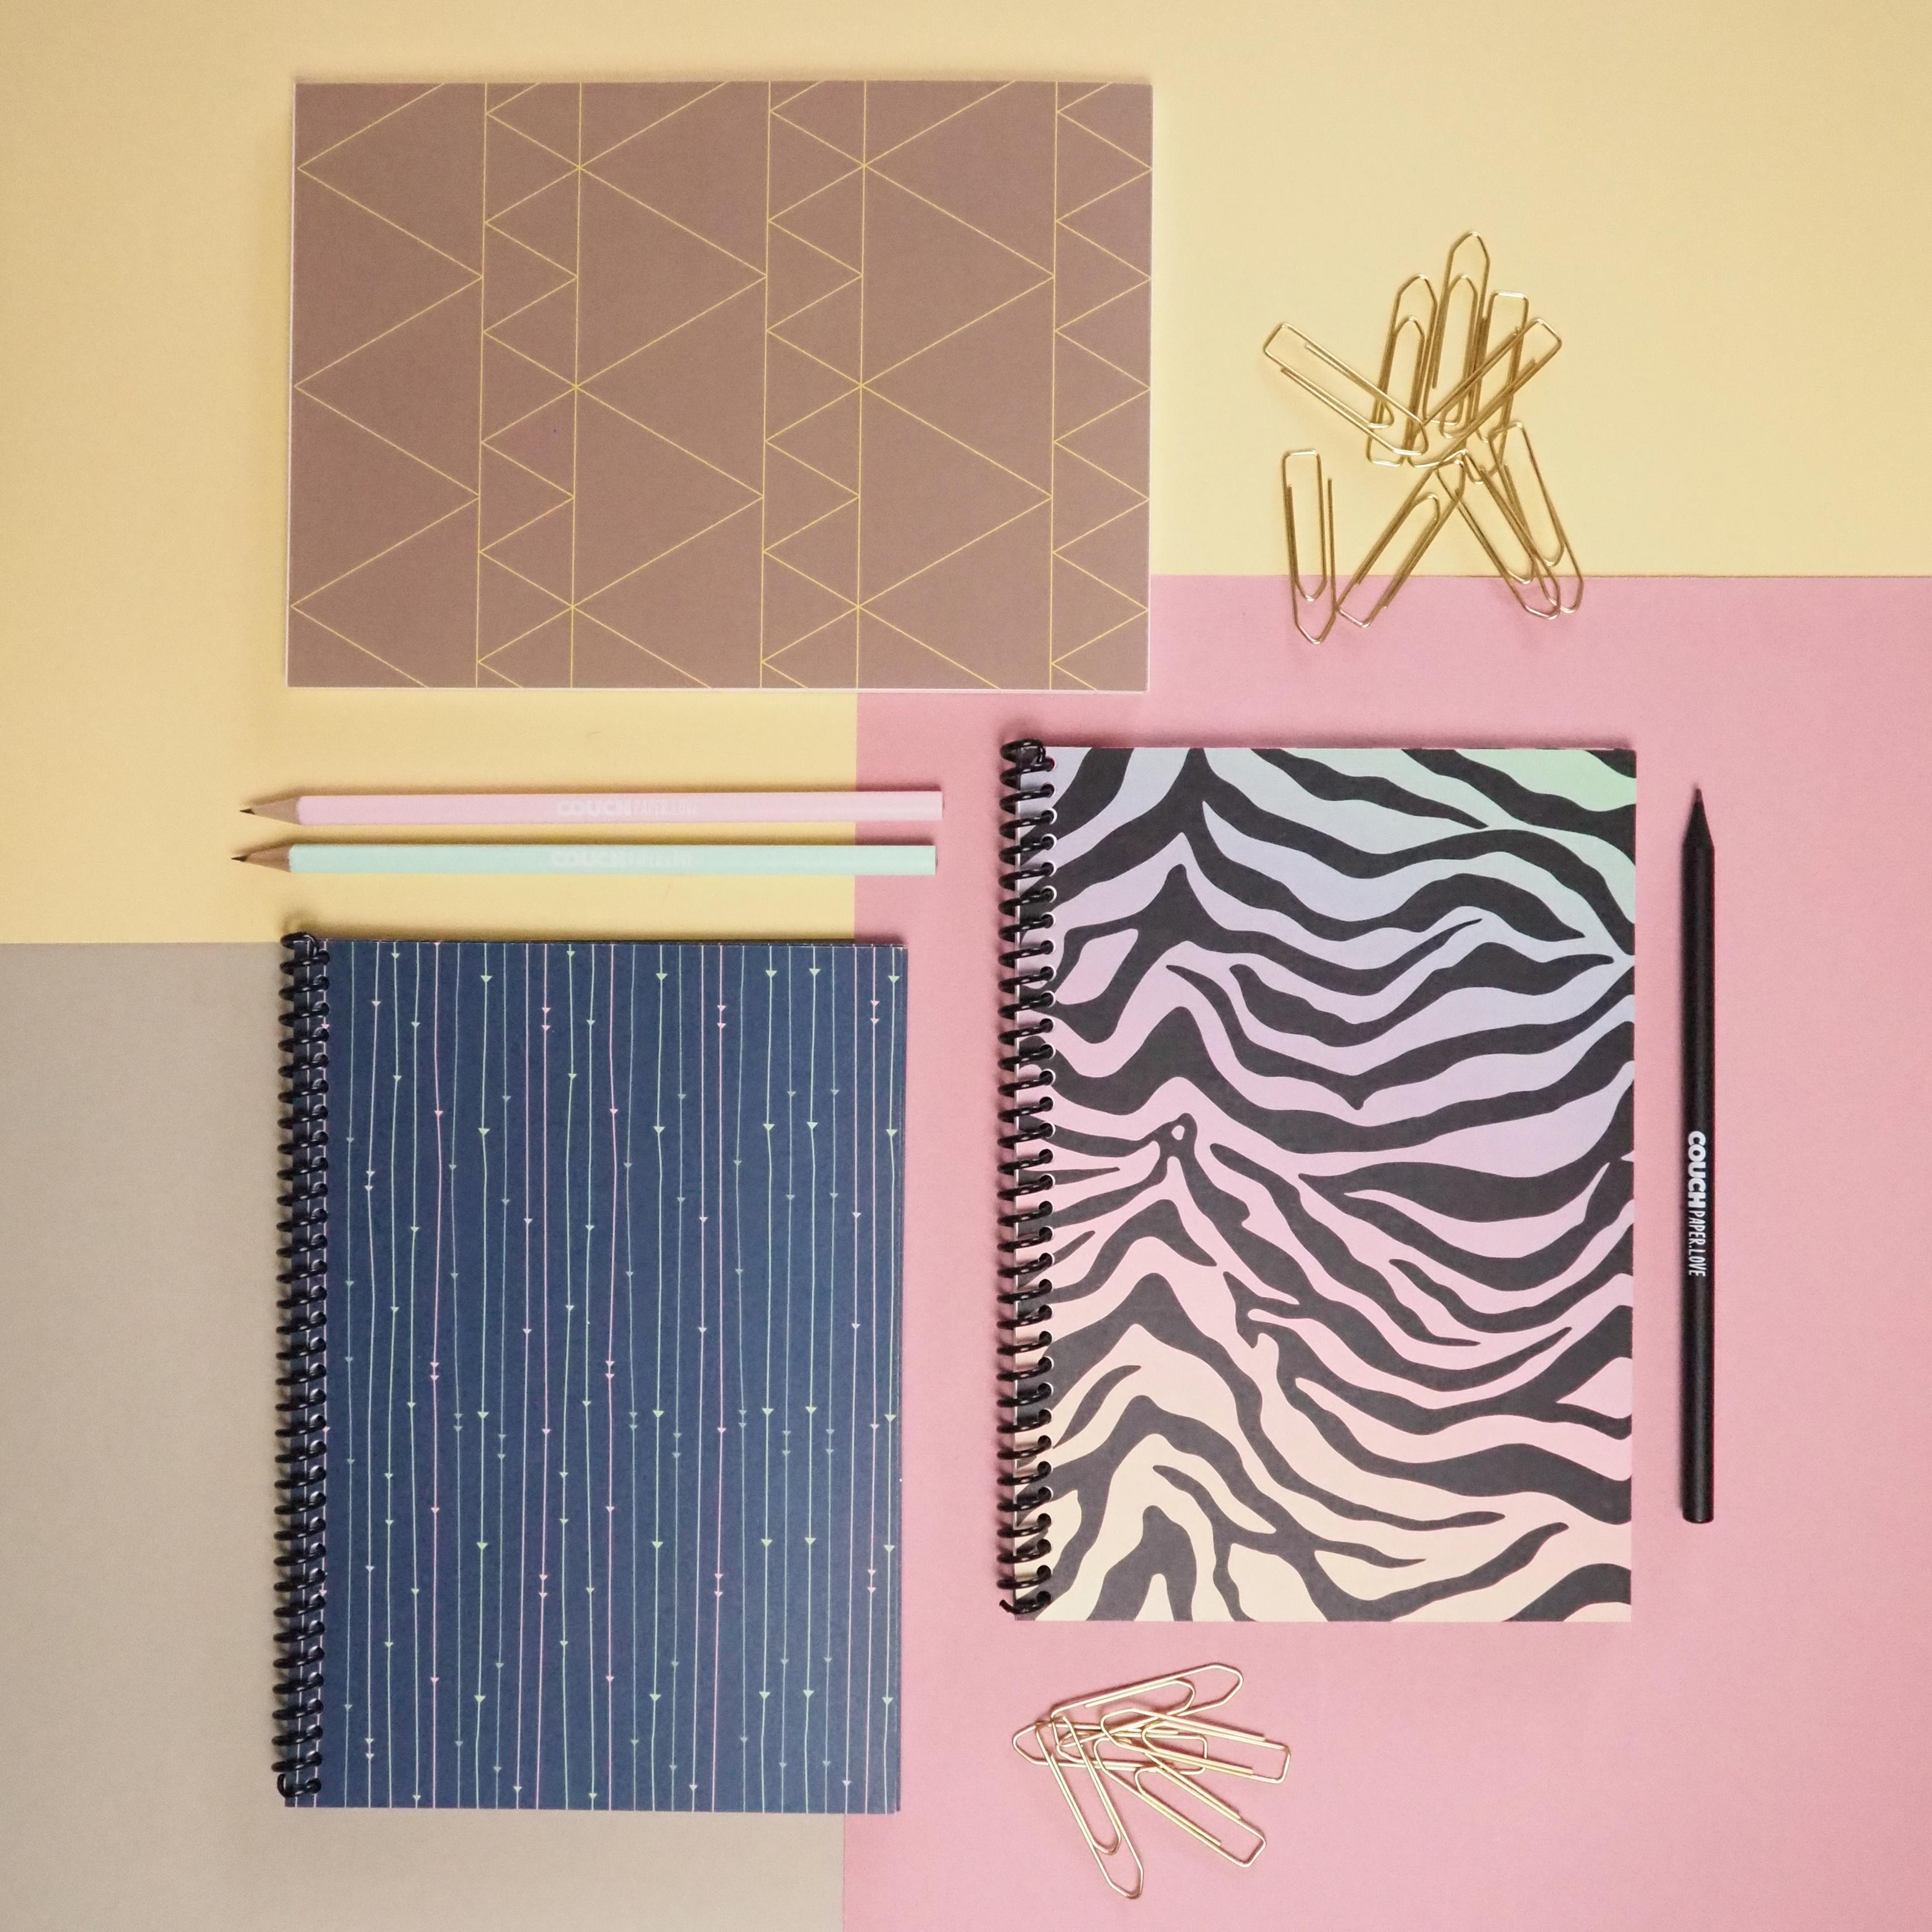 Ihr habt es so gewollt: Bei Instagram konntet ihr über die Designs der neuen #couchpaperlove Produkte abstimmen. 